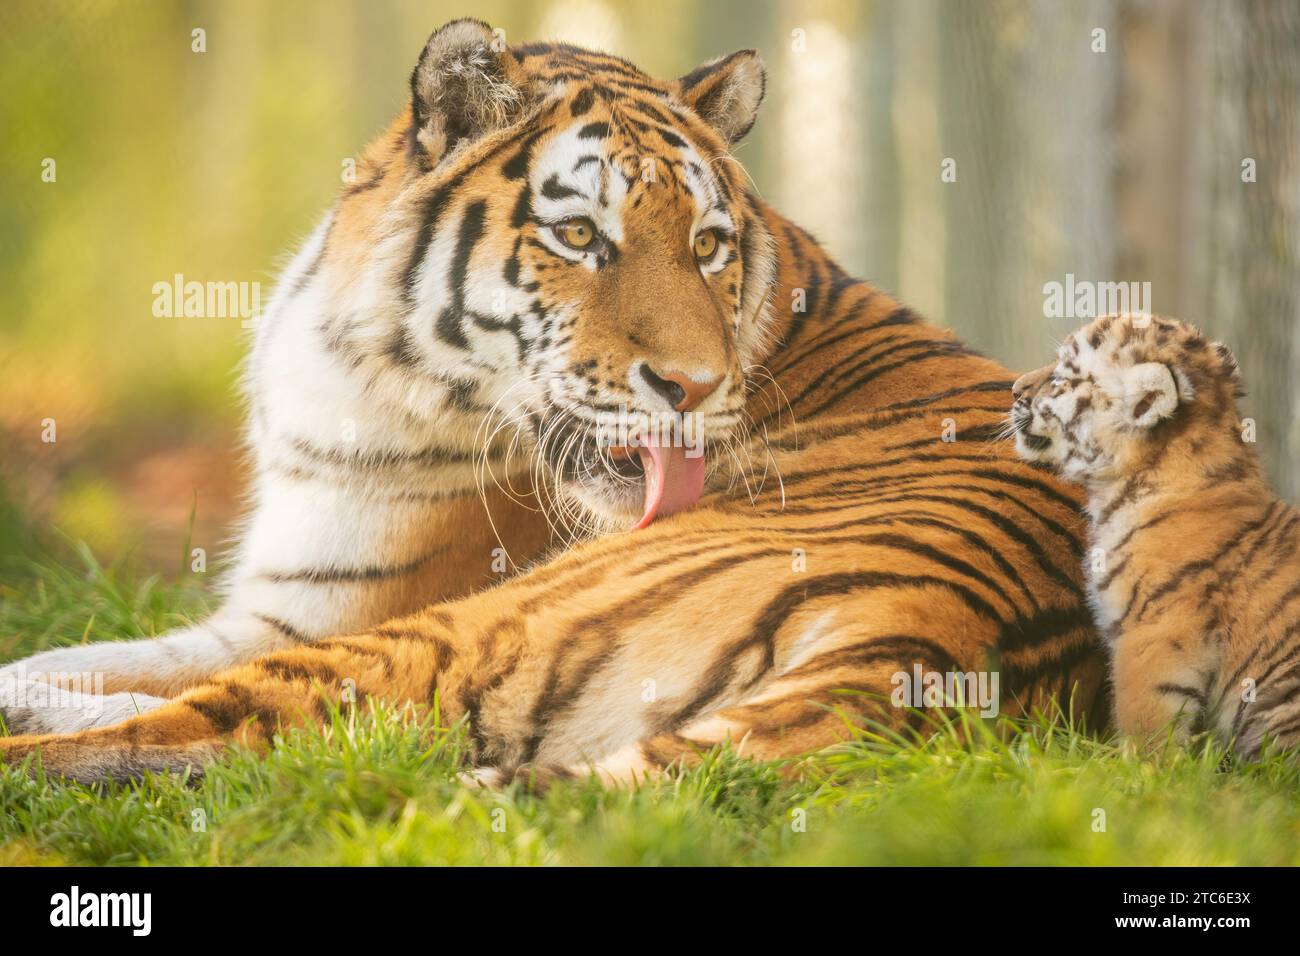 Le Baby Amur Tigers giocano in uno zoo del Regno Unito immagini che si SCIOGLIE IL CUORE DI una tigre siberiana che si prende cura dei suoi cuccioli sono state catturate allo zoo di Banham del Regno Unito. Questi due... Foto Stock